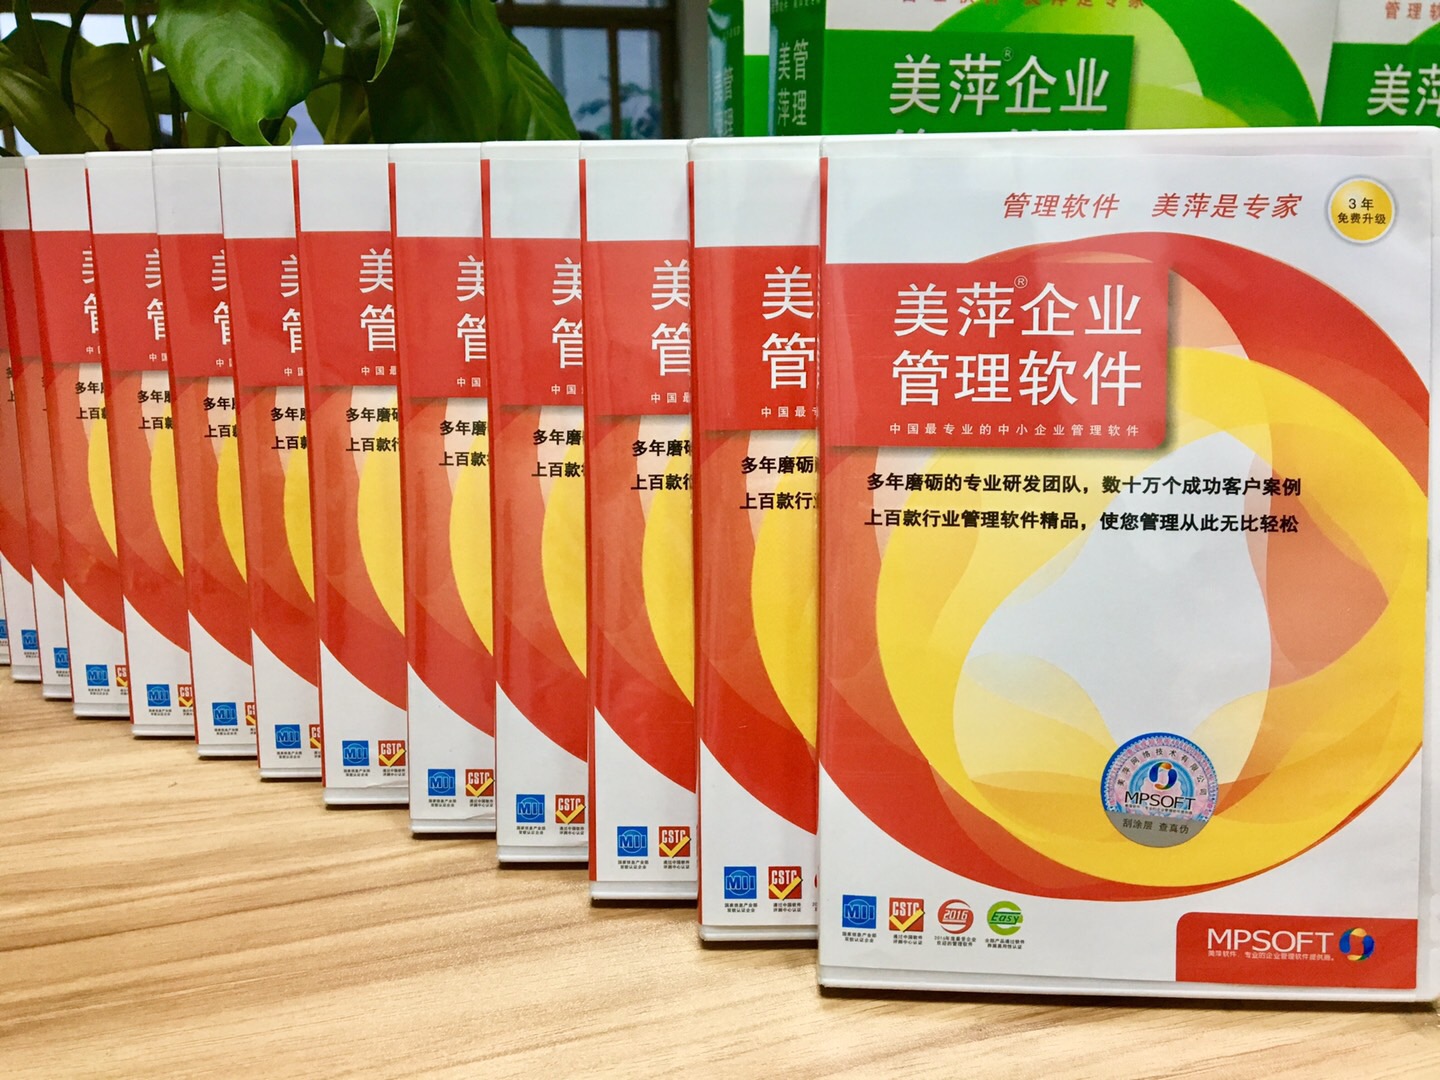 贵州美萍茶楼收银管理系统，茶艺茶社经营管理软件，免费试用30天